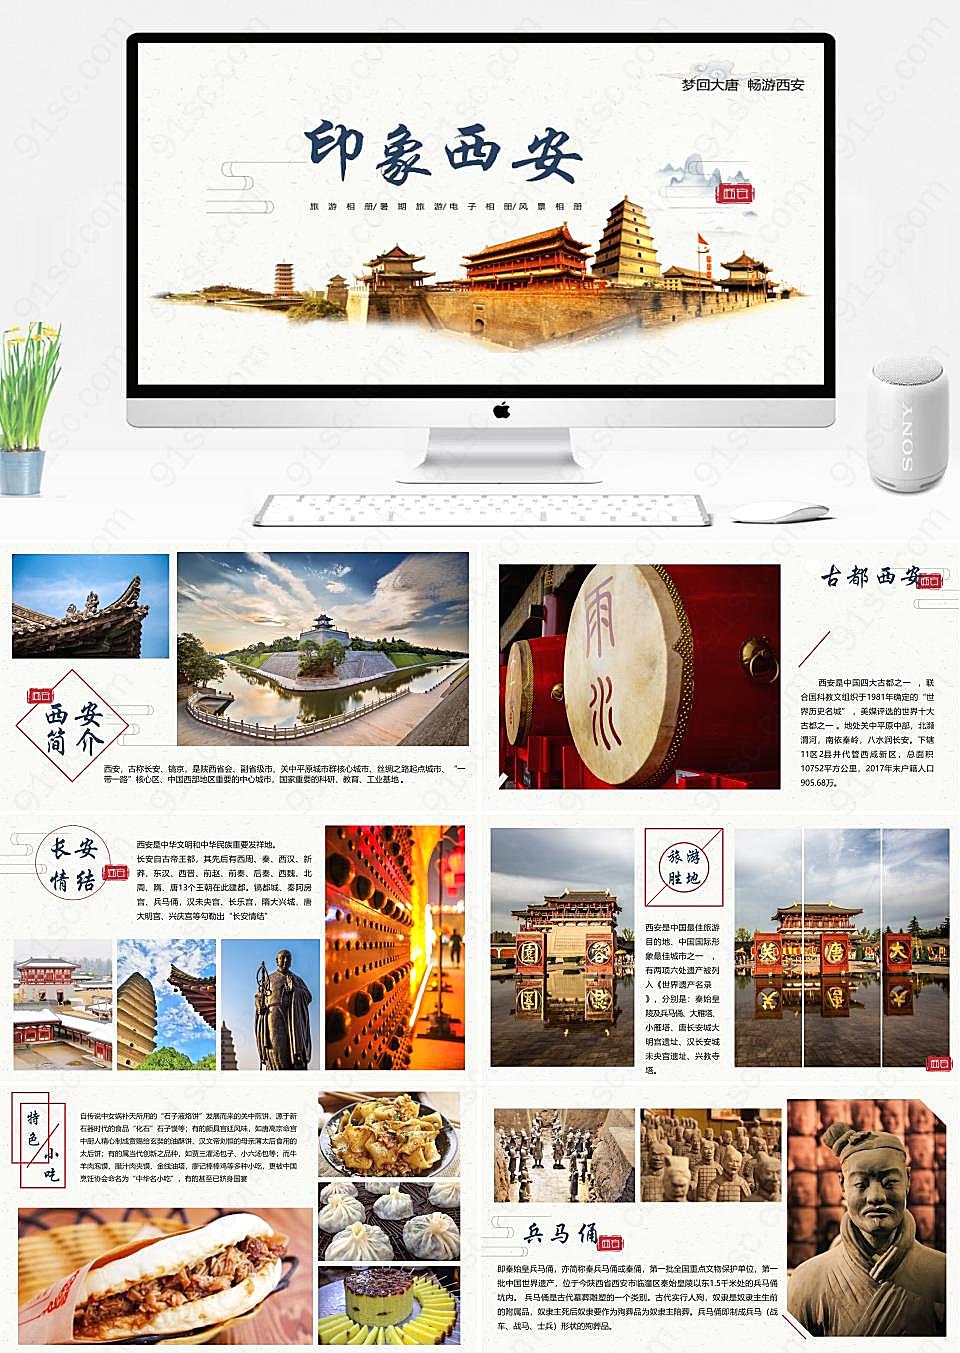 西安旅游文化宣传介绍画册PPT模板旅游旅行下载